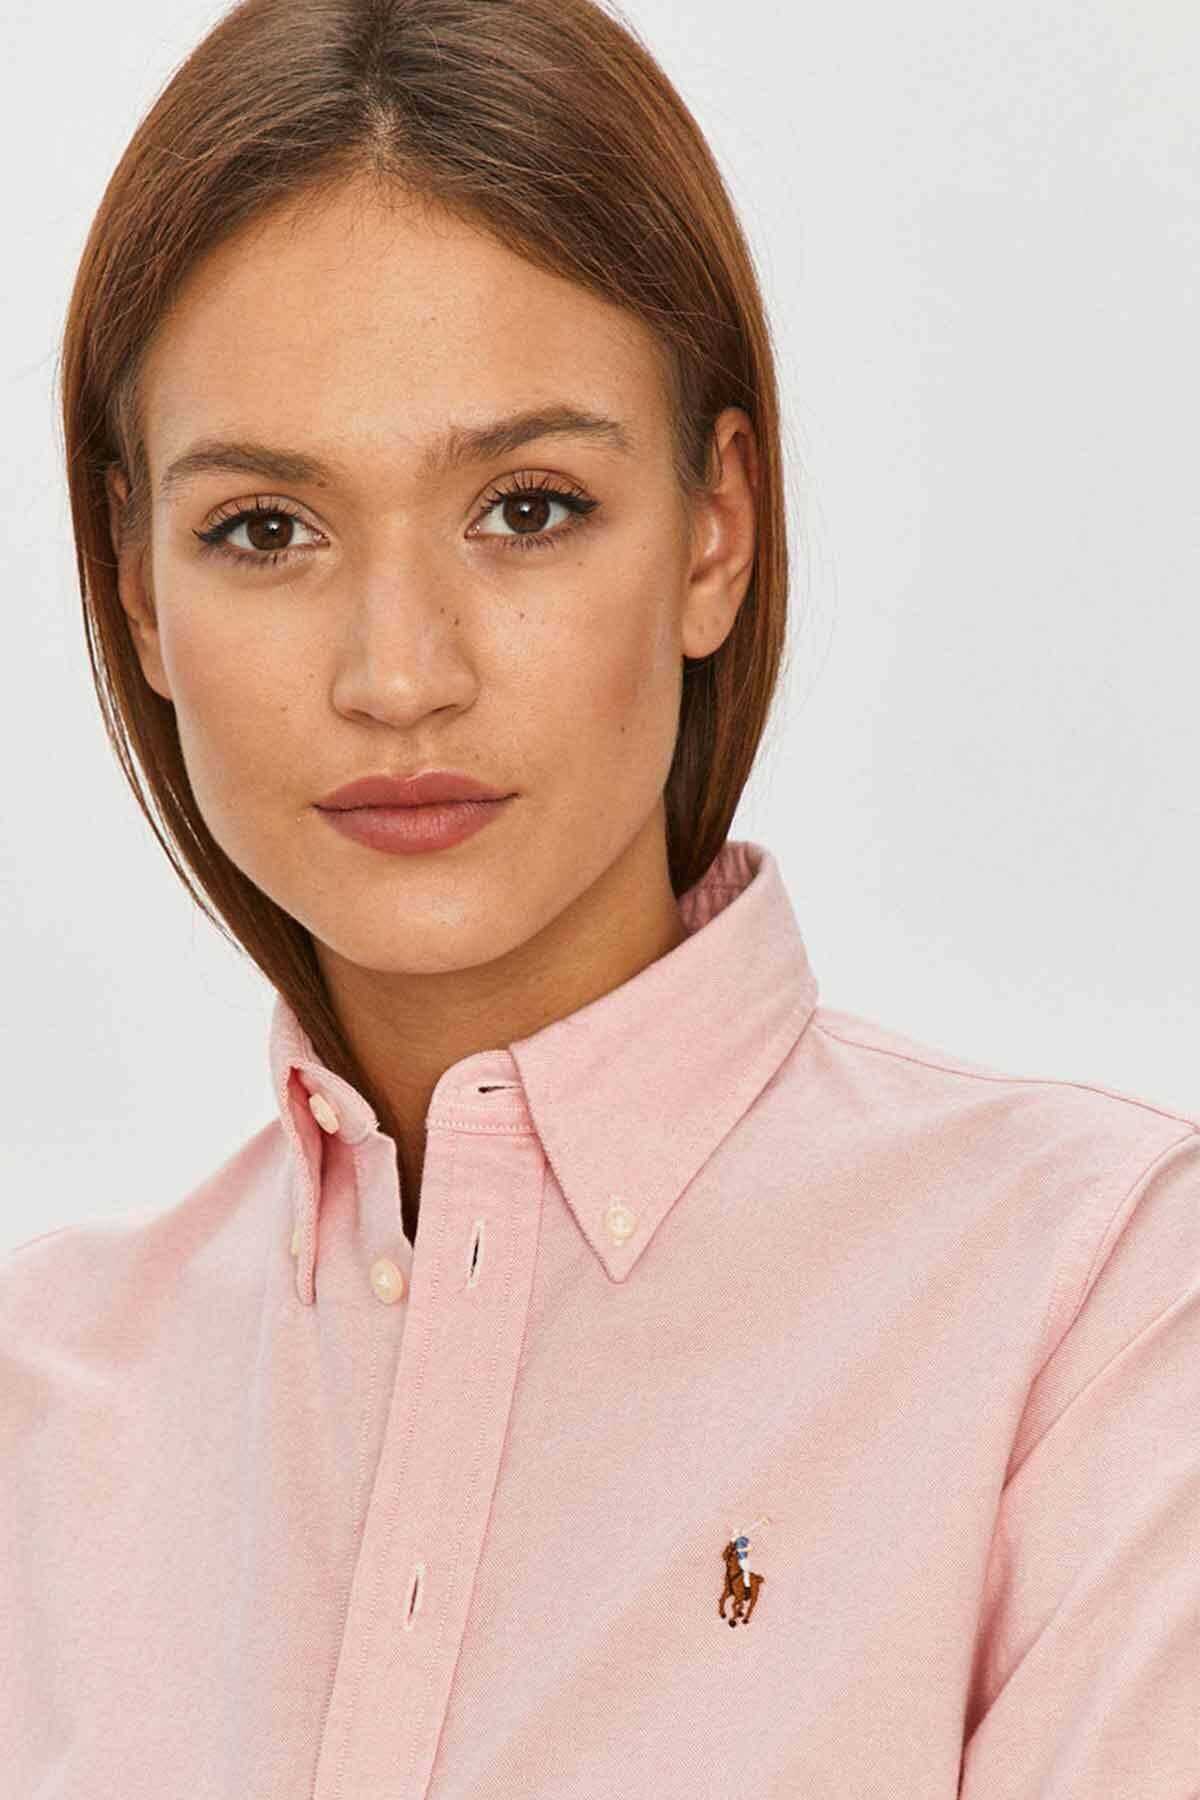 پیراهن آکسفورد زنانه یقه کلاسیک صورتی برند Polo 